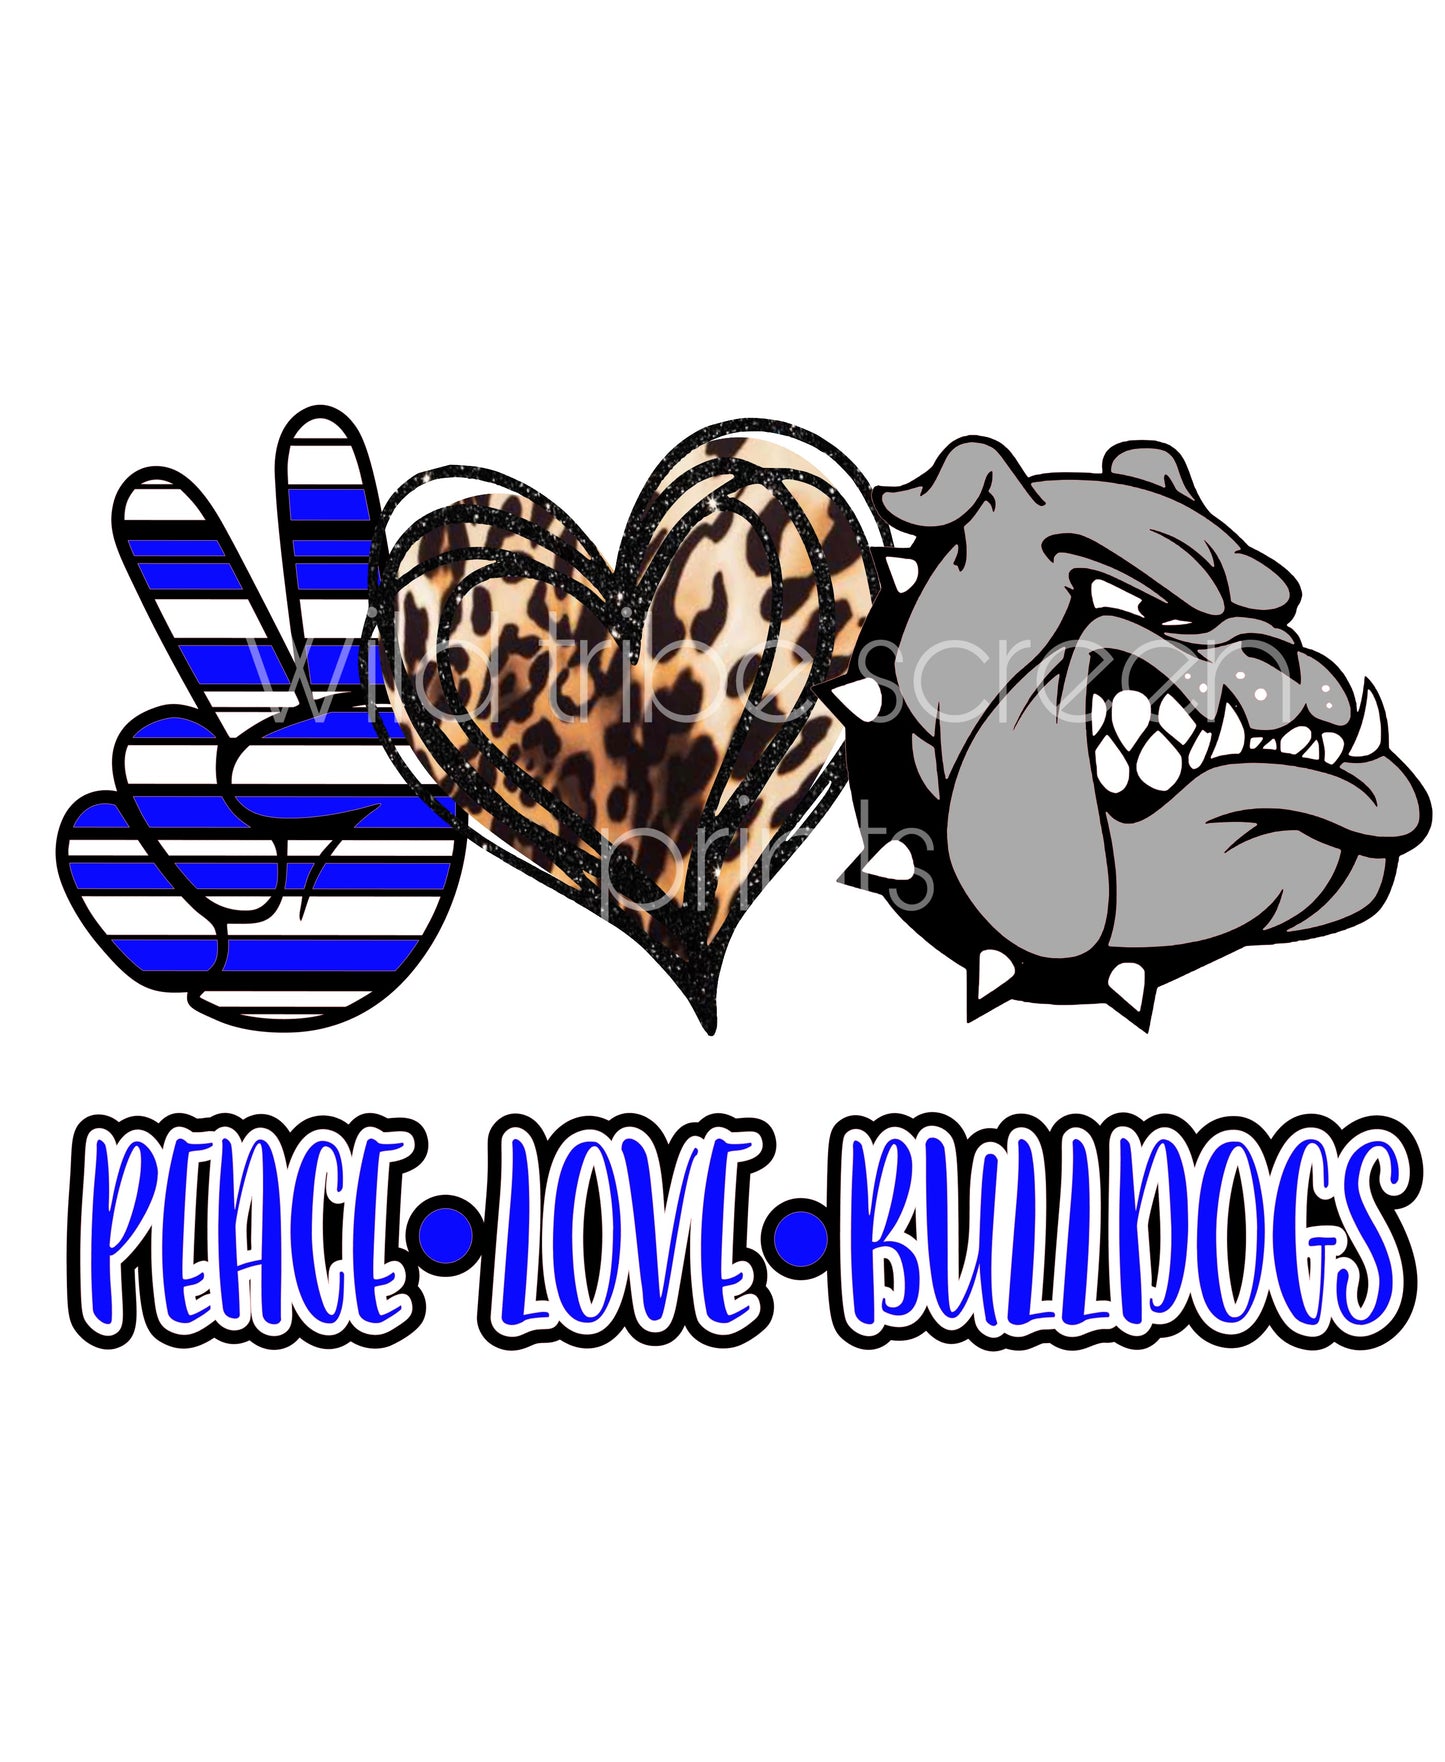 Peace love bulldogs royal blue